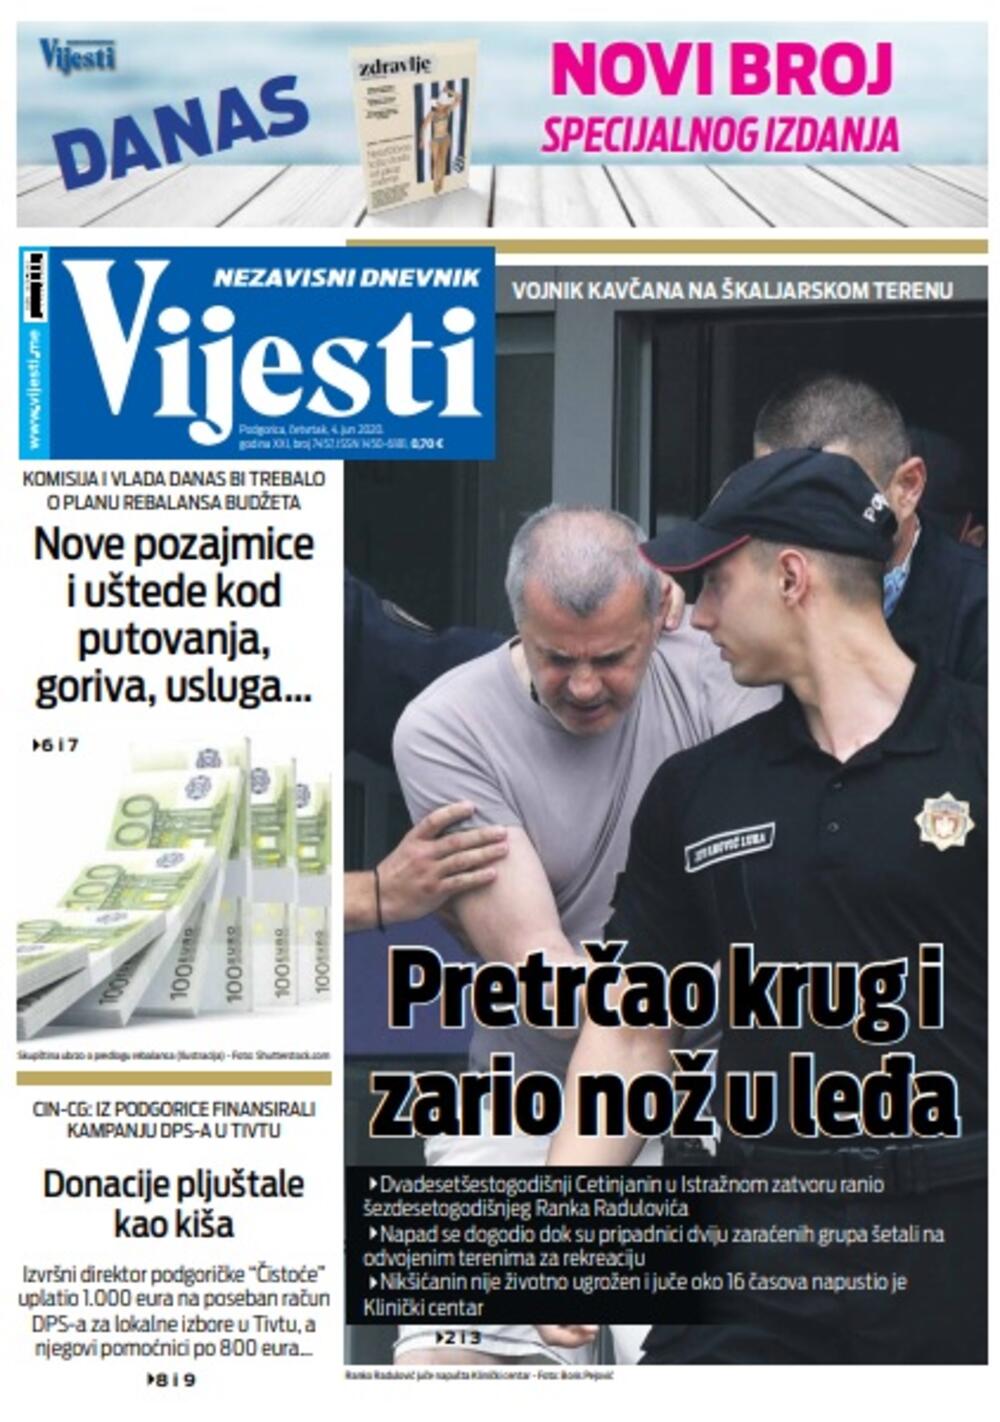 Naslovna strana "Vijesti" za četvrtak 4. jun 2020. godine, Foto: Vijesti